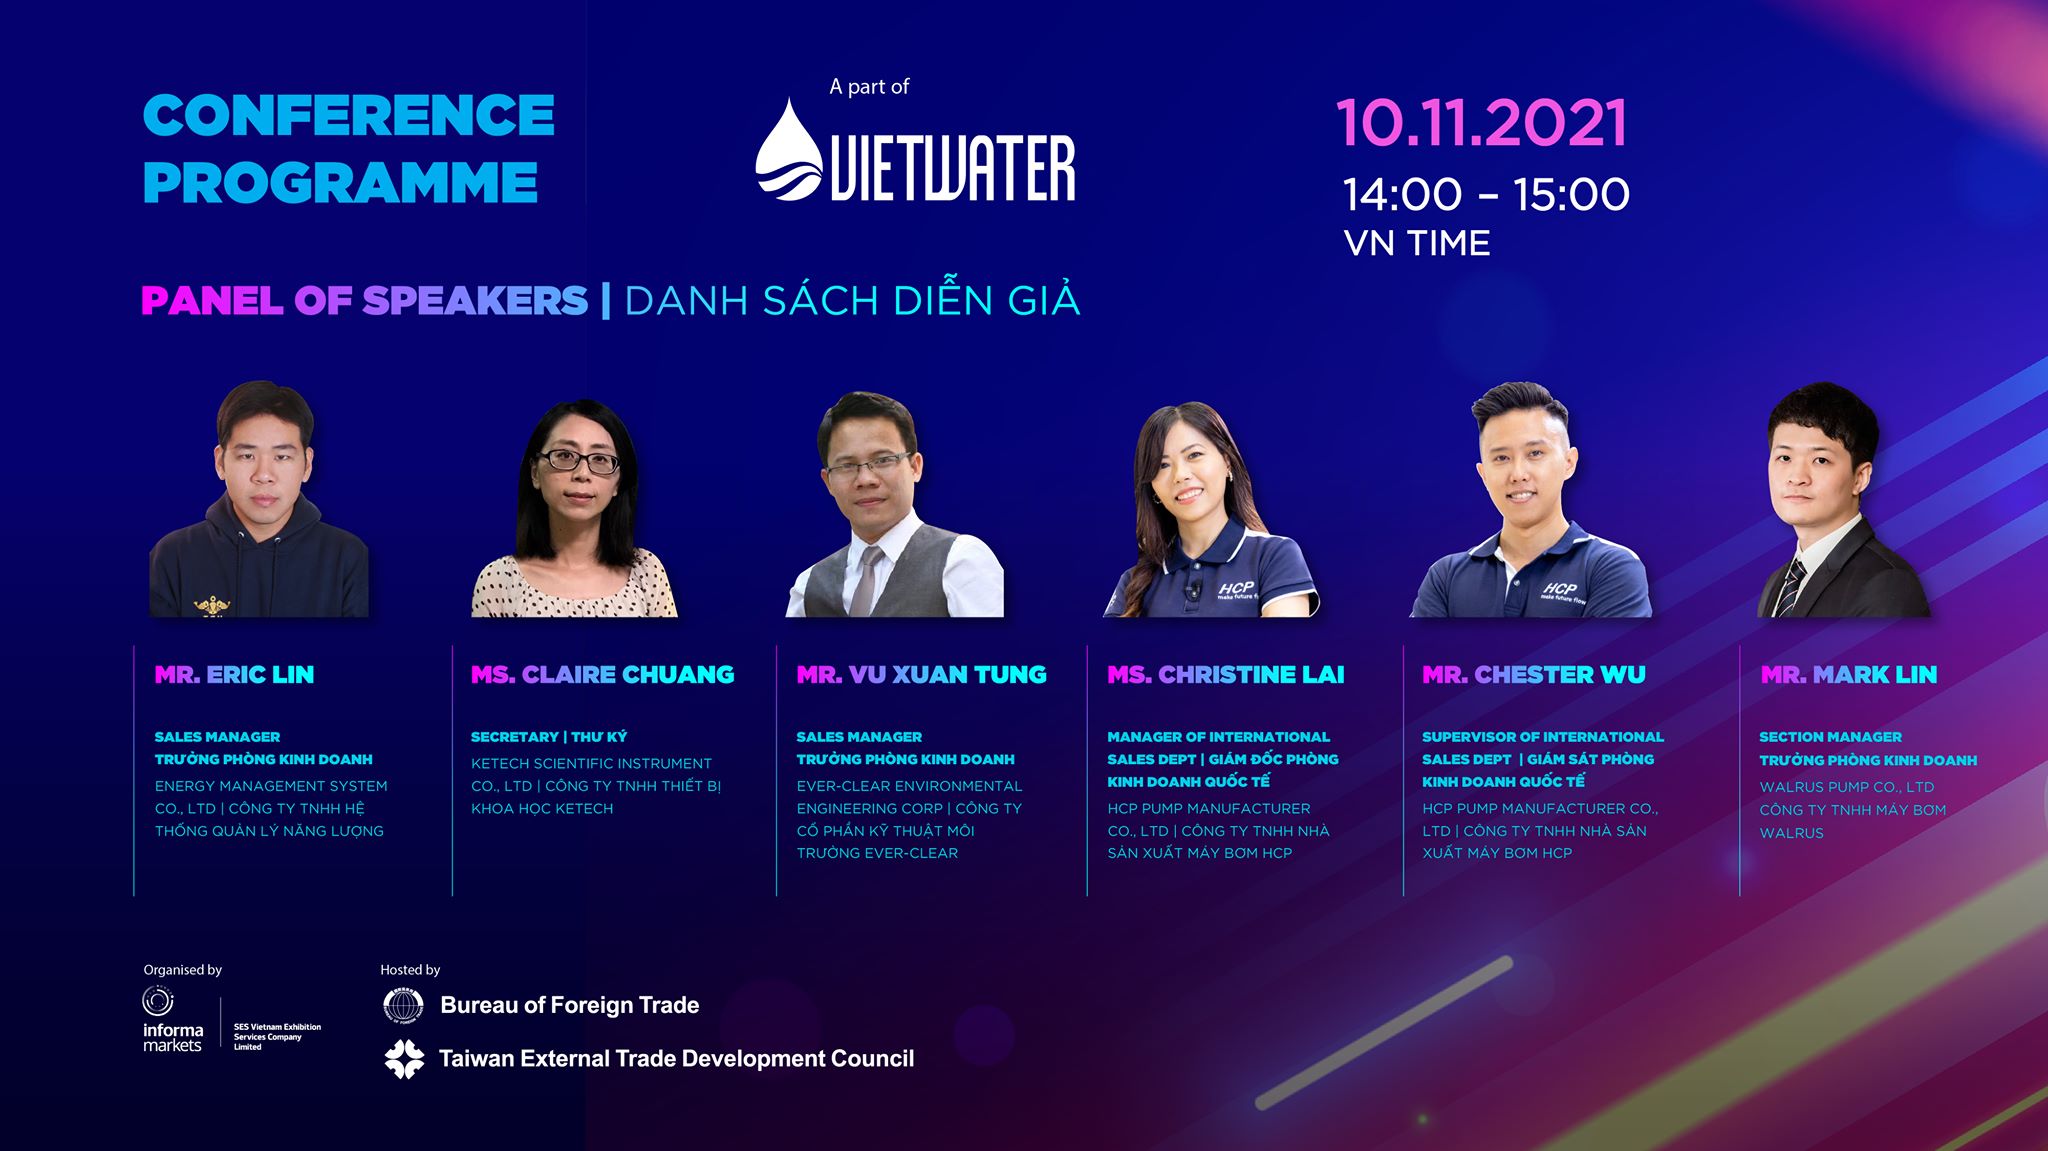 Taiwan Excellence tổ chức hội thảo trực tuyến “Hướng tới Ngành nước 4.0” với sự góp mặt của đại diện cấp cao tới từ 5 thương hiệu Đài Loan: EMS, Ketech, Ever-Clear, HCP Pump và Walrus Pump. (Nguồn ảnh: Facebook Vietwater Expo & Forum)